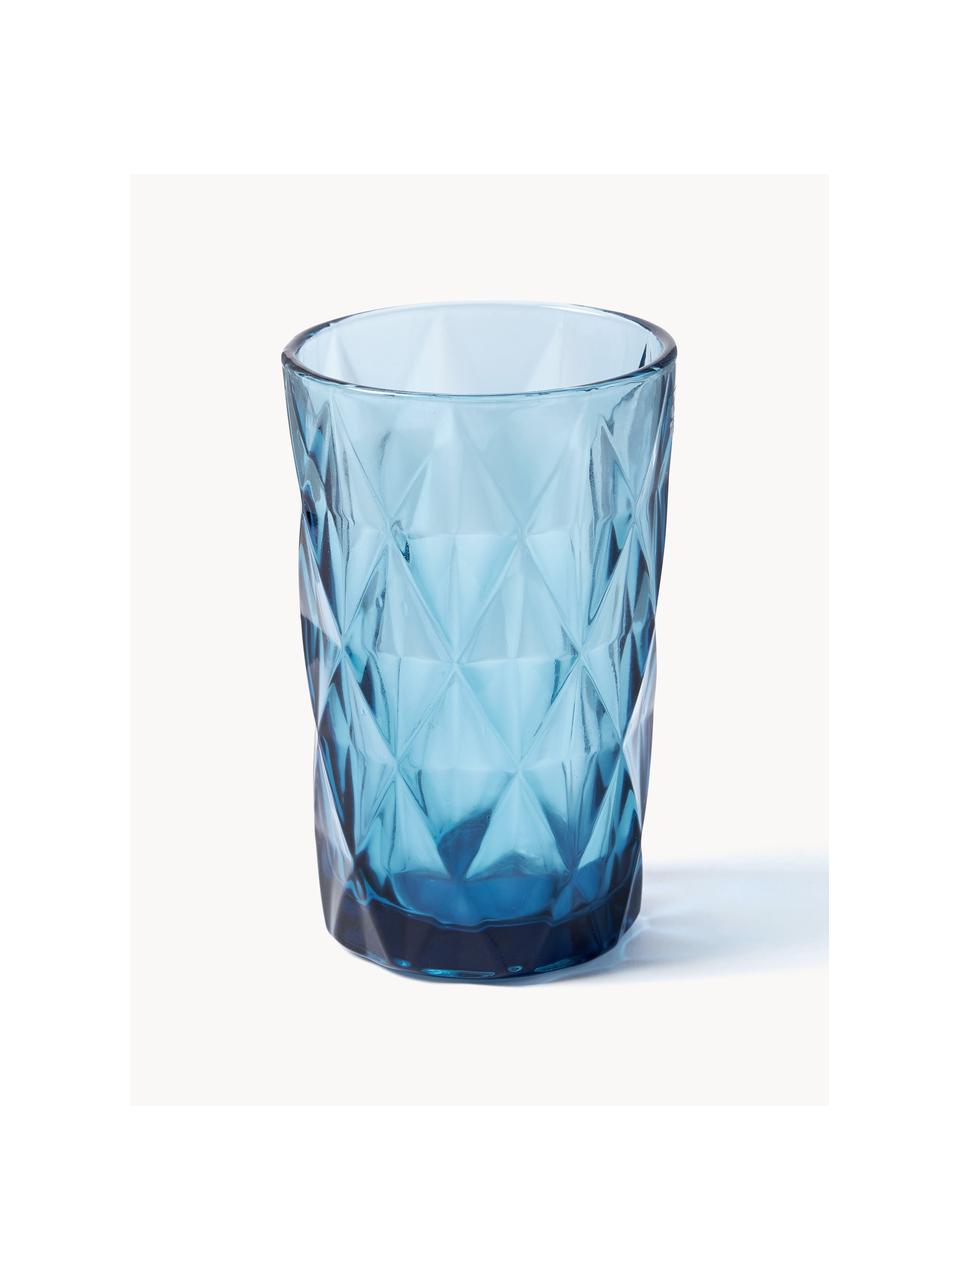 Longdrinkglazen Colorado met structuurpatroon, set van 4, Glas, Blauw, mauve, grijs, groen, Ø 8 x H 13 cm, 310 ml